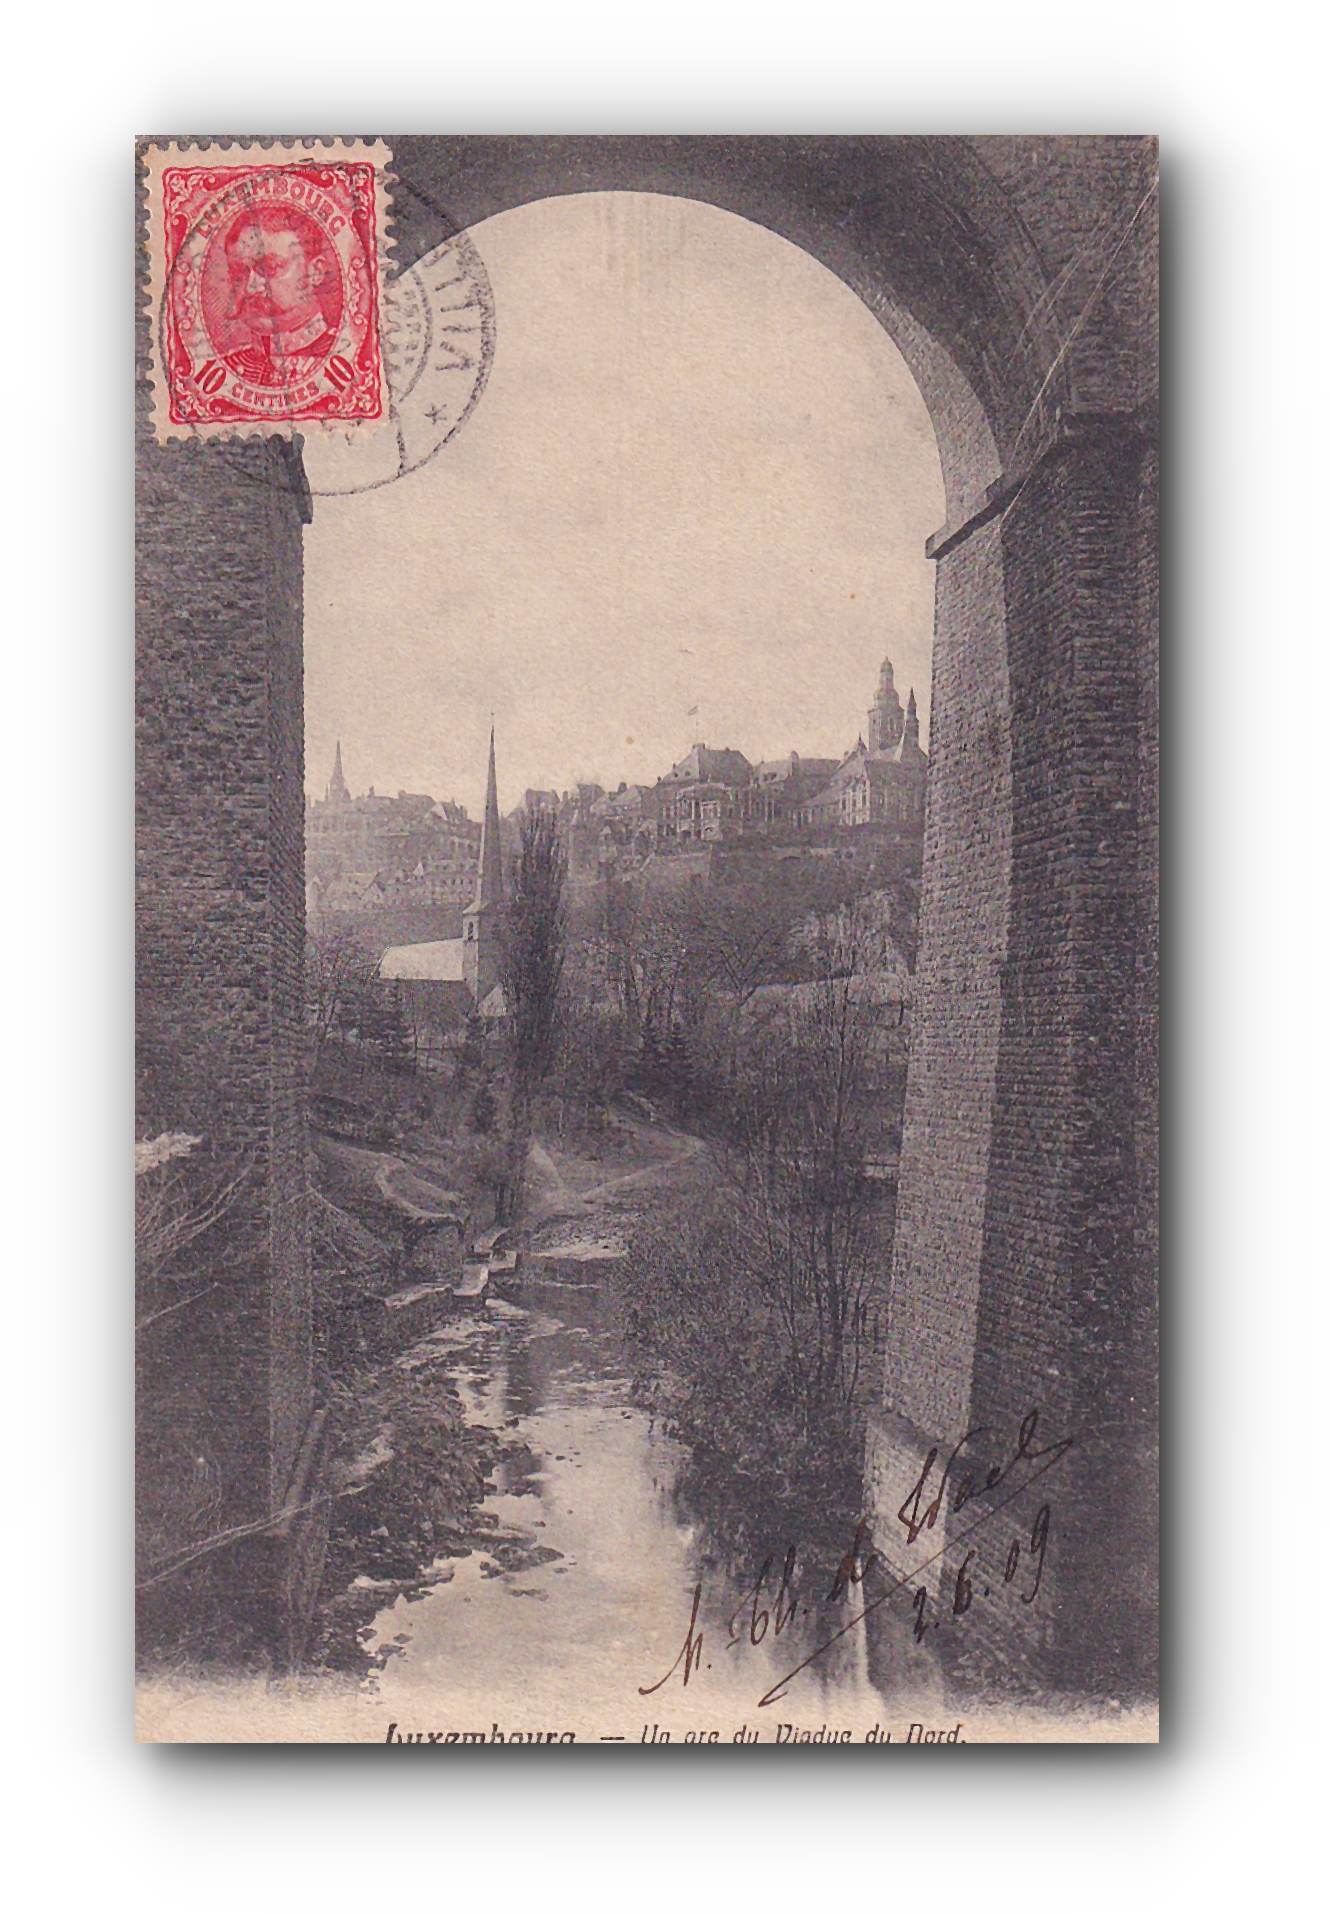 - LUXEMBOURG - Un arc du Viaduc du Nord - 02.06.1909 -